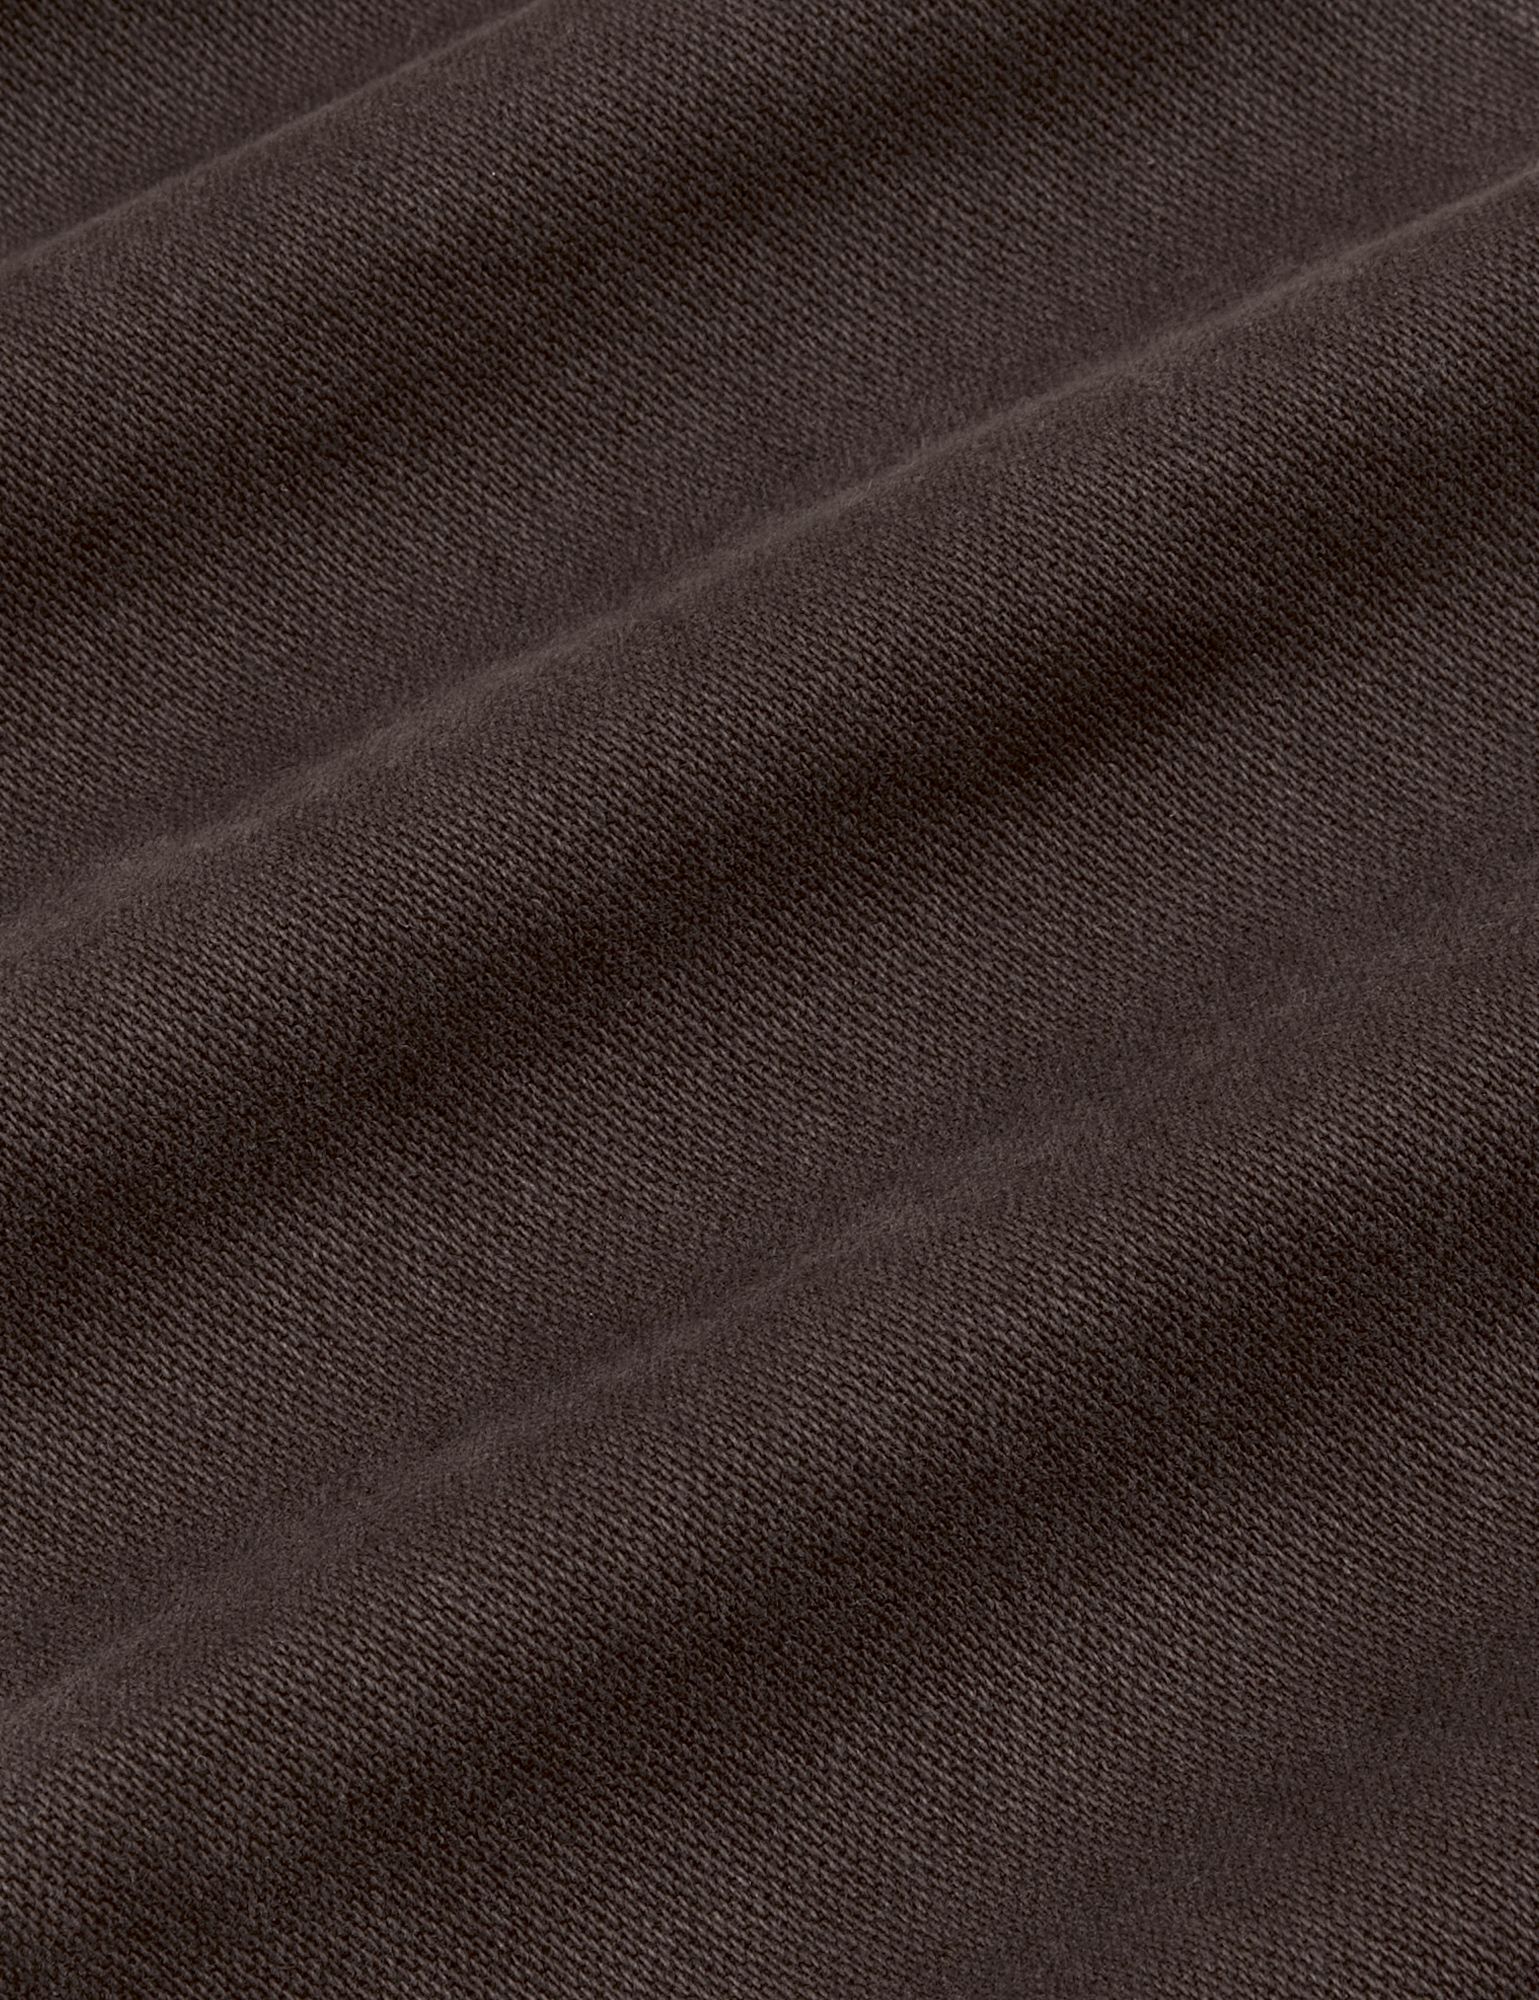 Original Overalls in Mono Espresso fabric detail close up